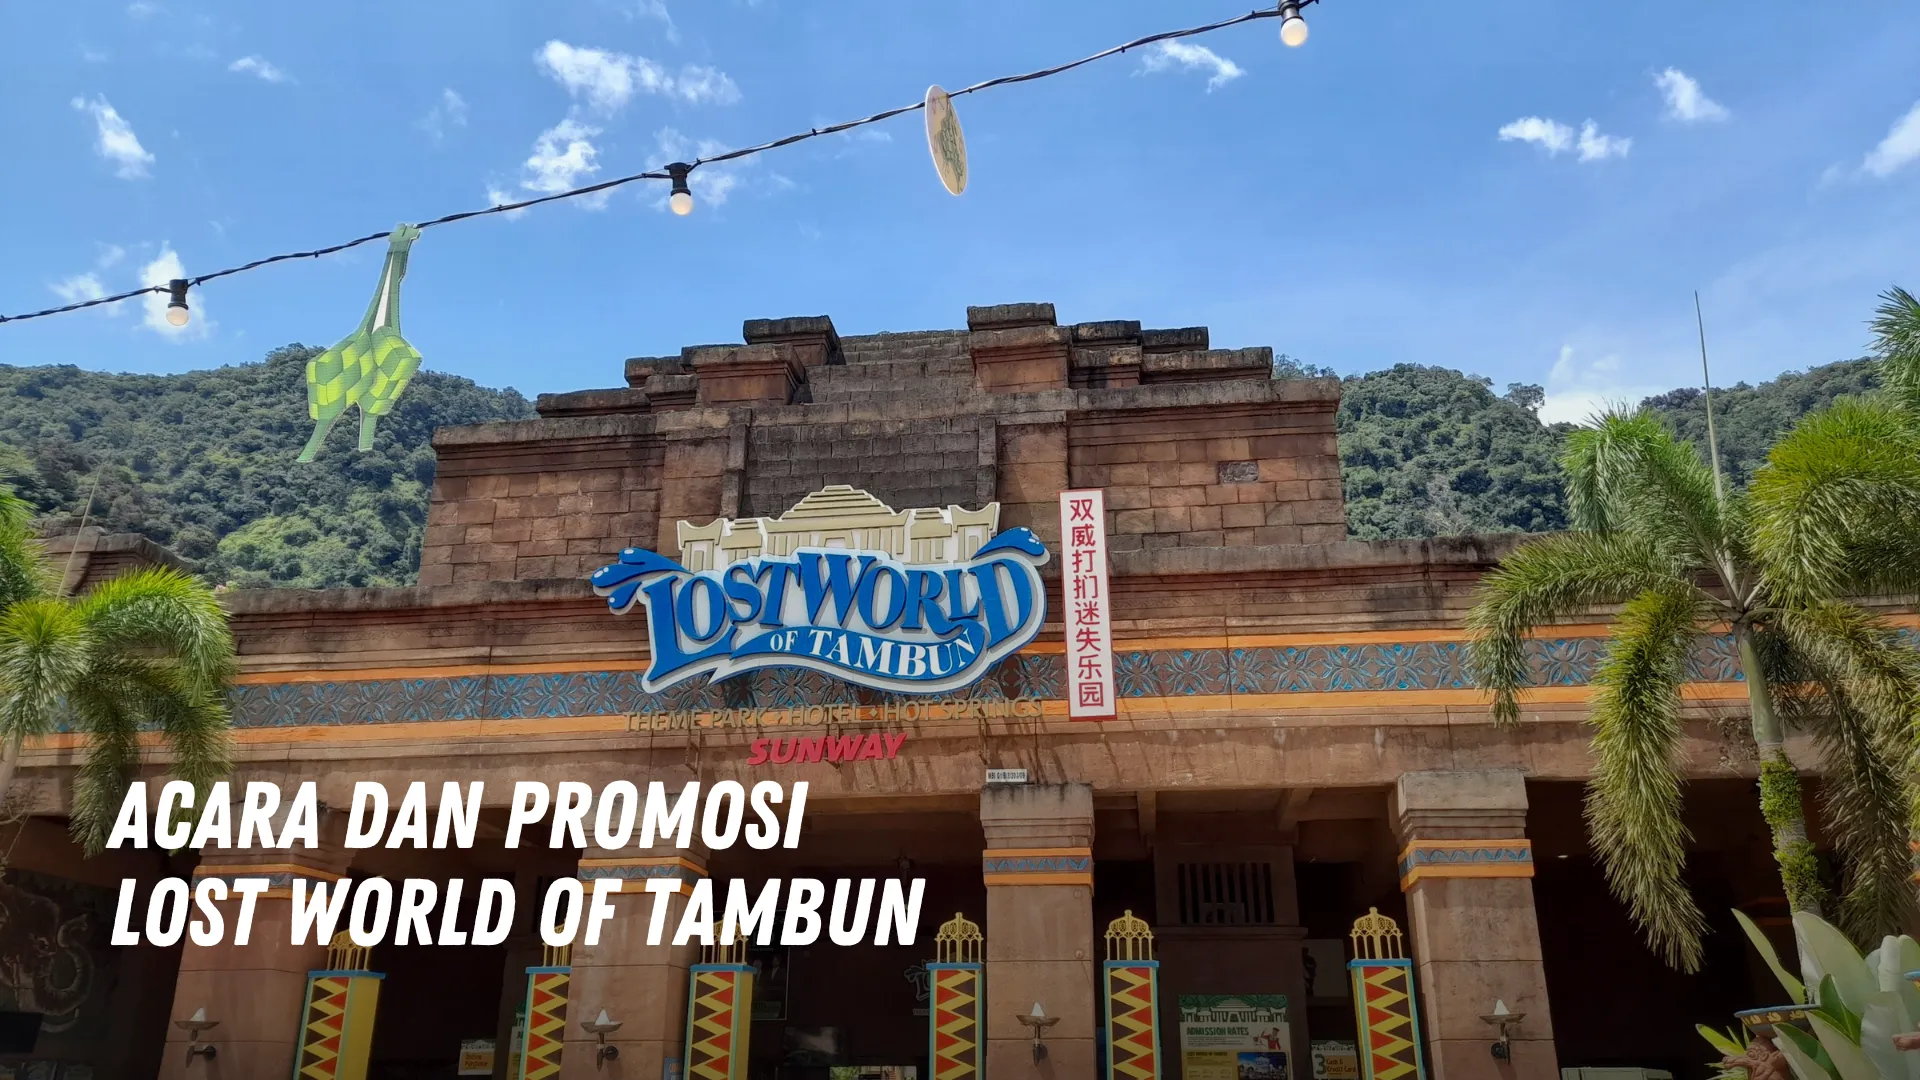 Acara dan promosi Lost World of Tambun Malaysia